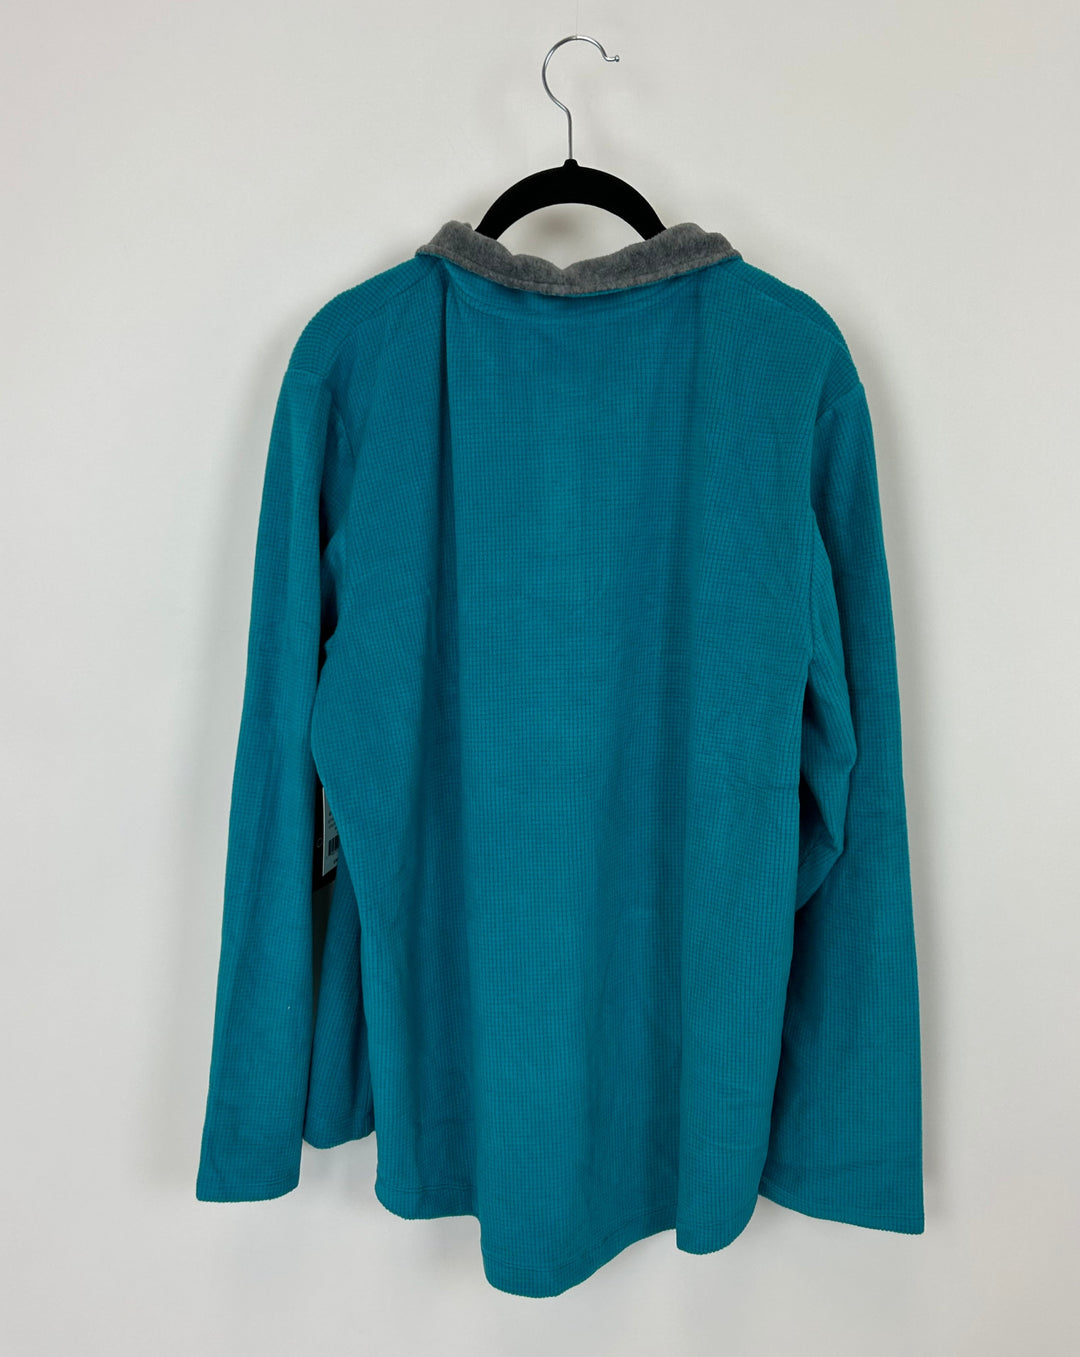 Teal Fleece Polo Shirt - 1X